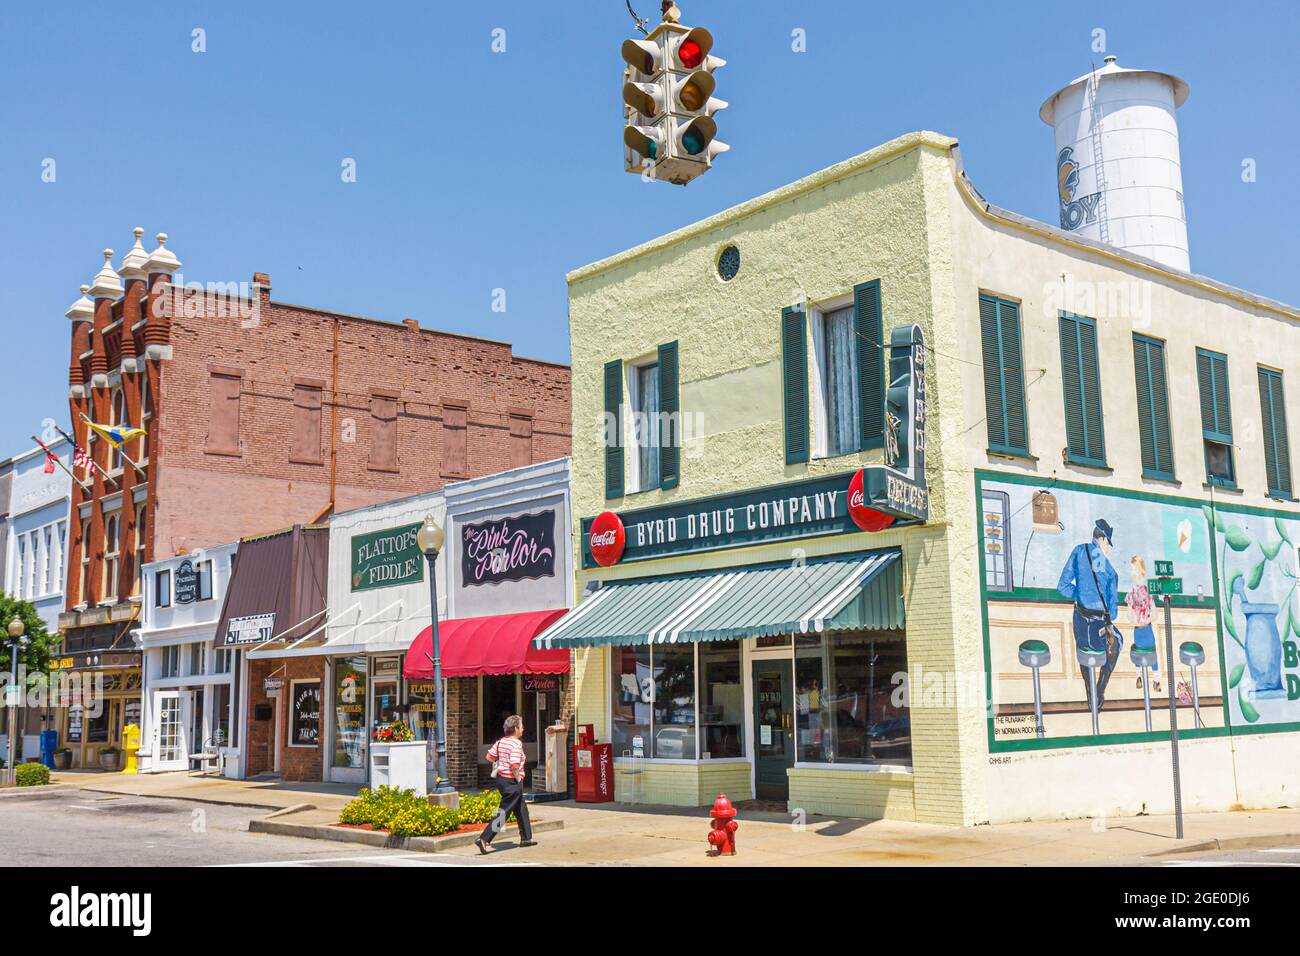 Alabama Troy, piccola piazza del centro edifici in mattoni, Byrd Drug Company farmacia soda fontana edificio strada murale, Foto Stock